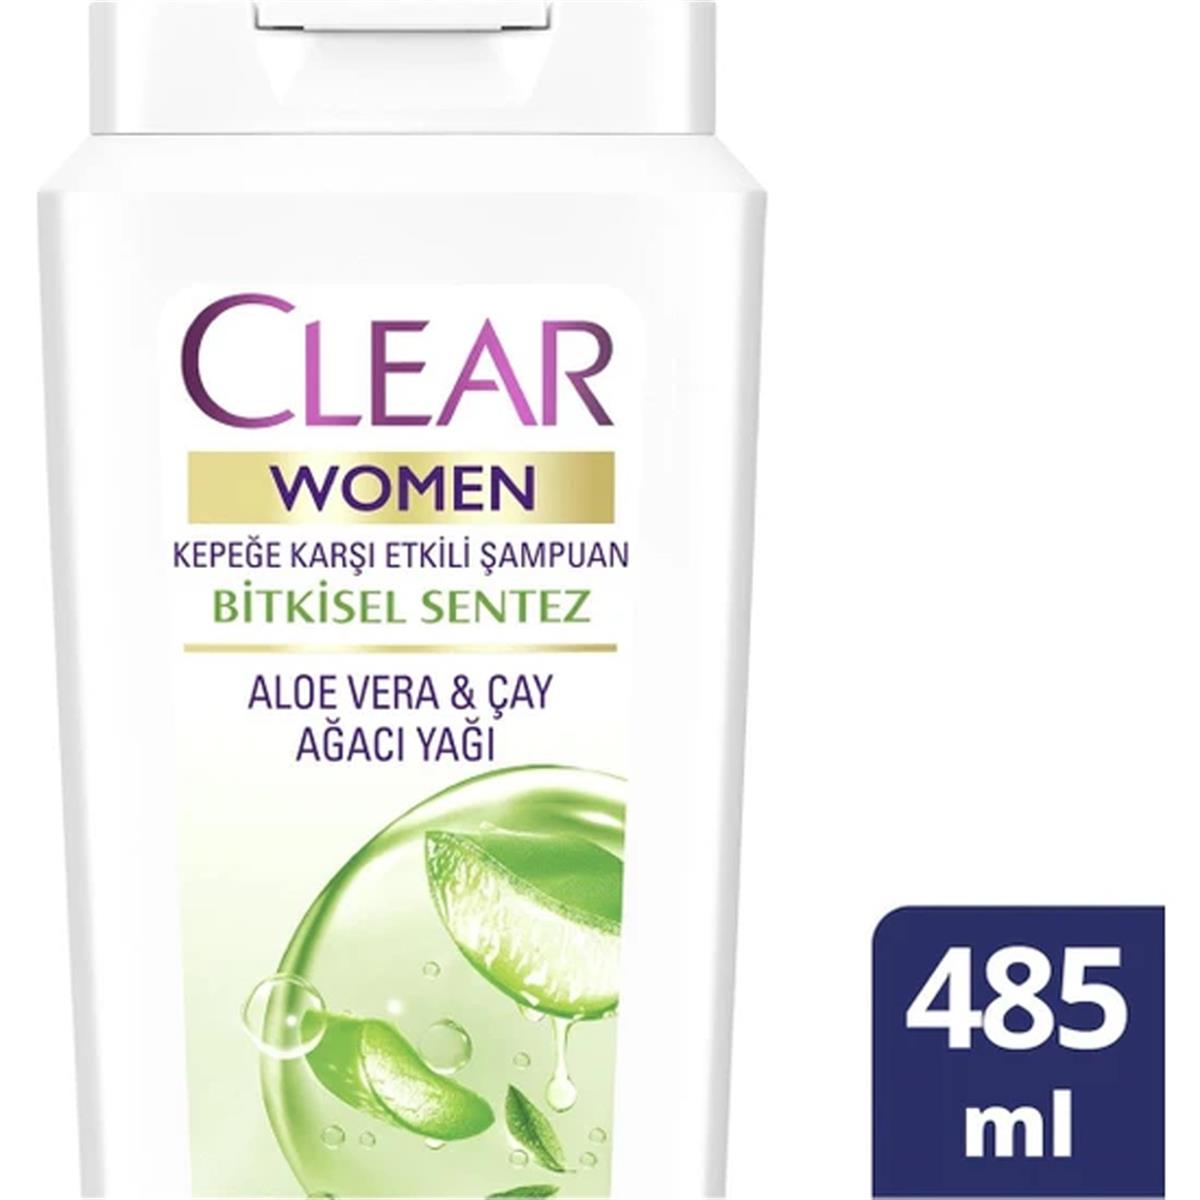 Clear Women Kepeğe Karşı Etkili Şampuan Bitkisel Sentez Aloe Vera & Çay Ağ  Yağı 485 ml